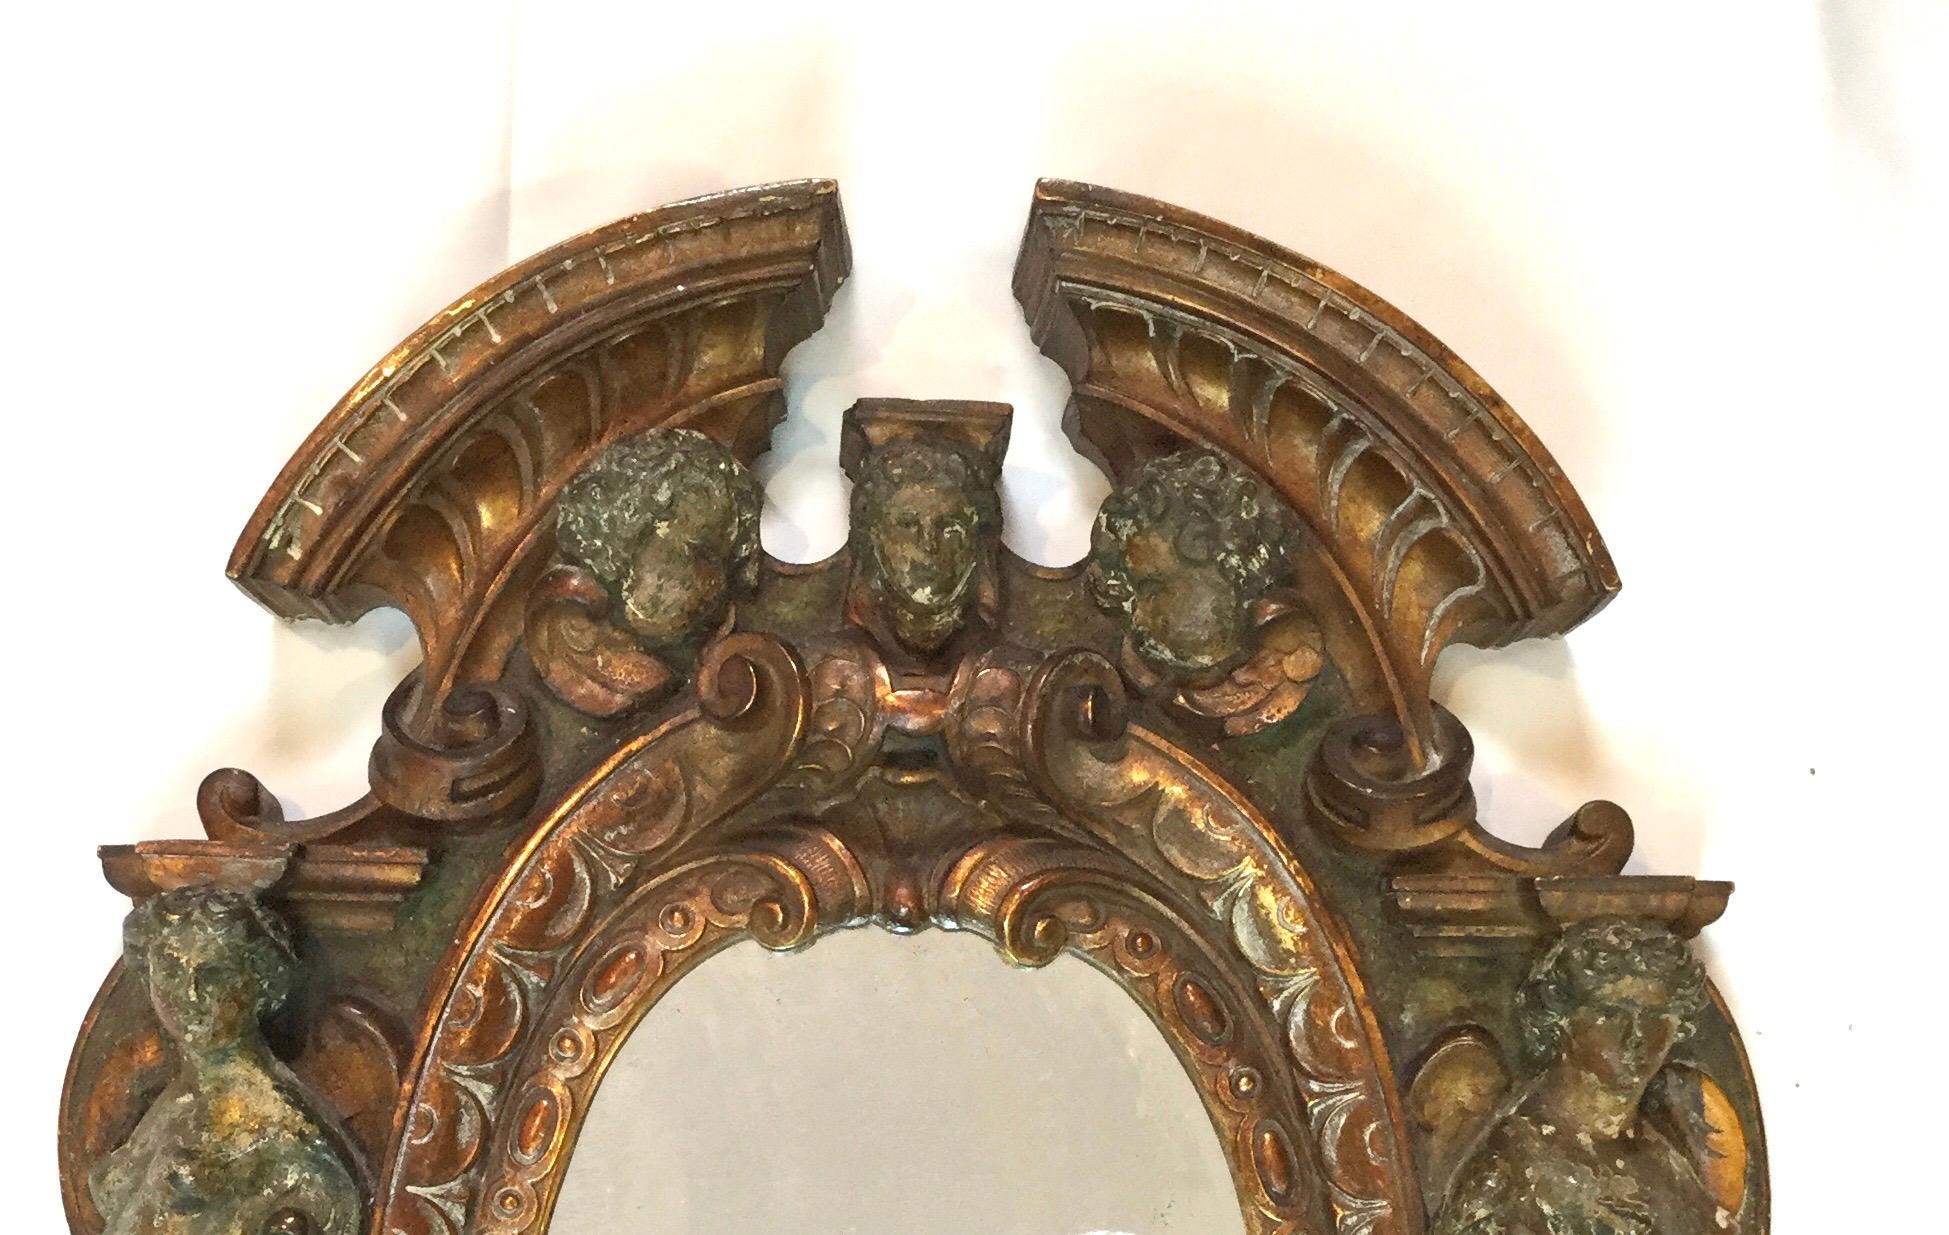 Miroir de la Renaissance italienne en métal mixte du 17e au 18e siècle, fabriqué en Italie toscane
Exceptionnel miroir figuratif antique de la Renaissance, très difficile à trouver à cette époque. Le cadre en bronze a une finition peinte à